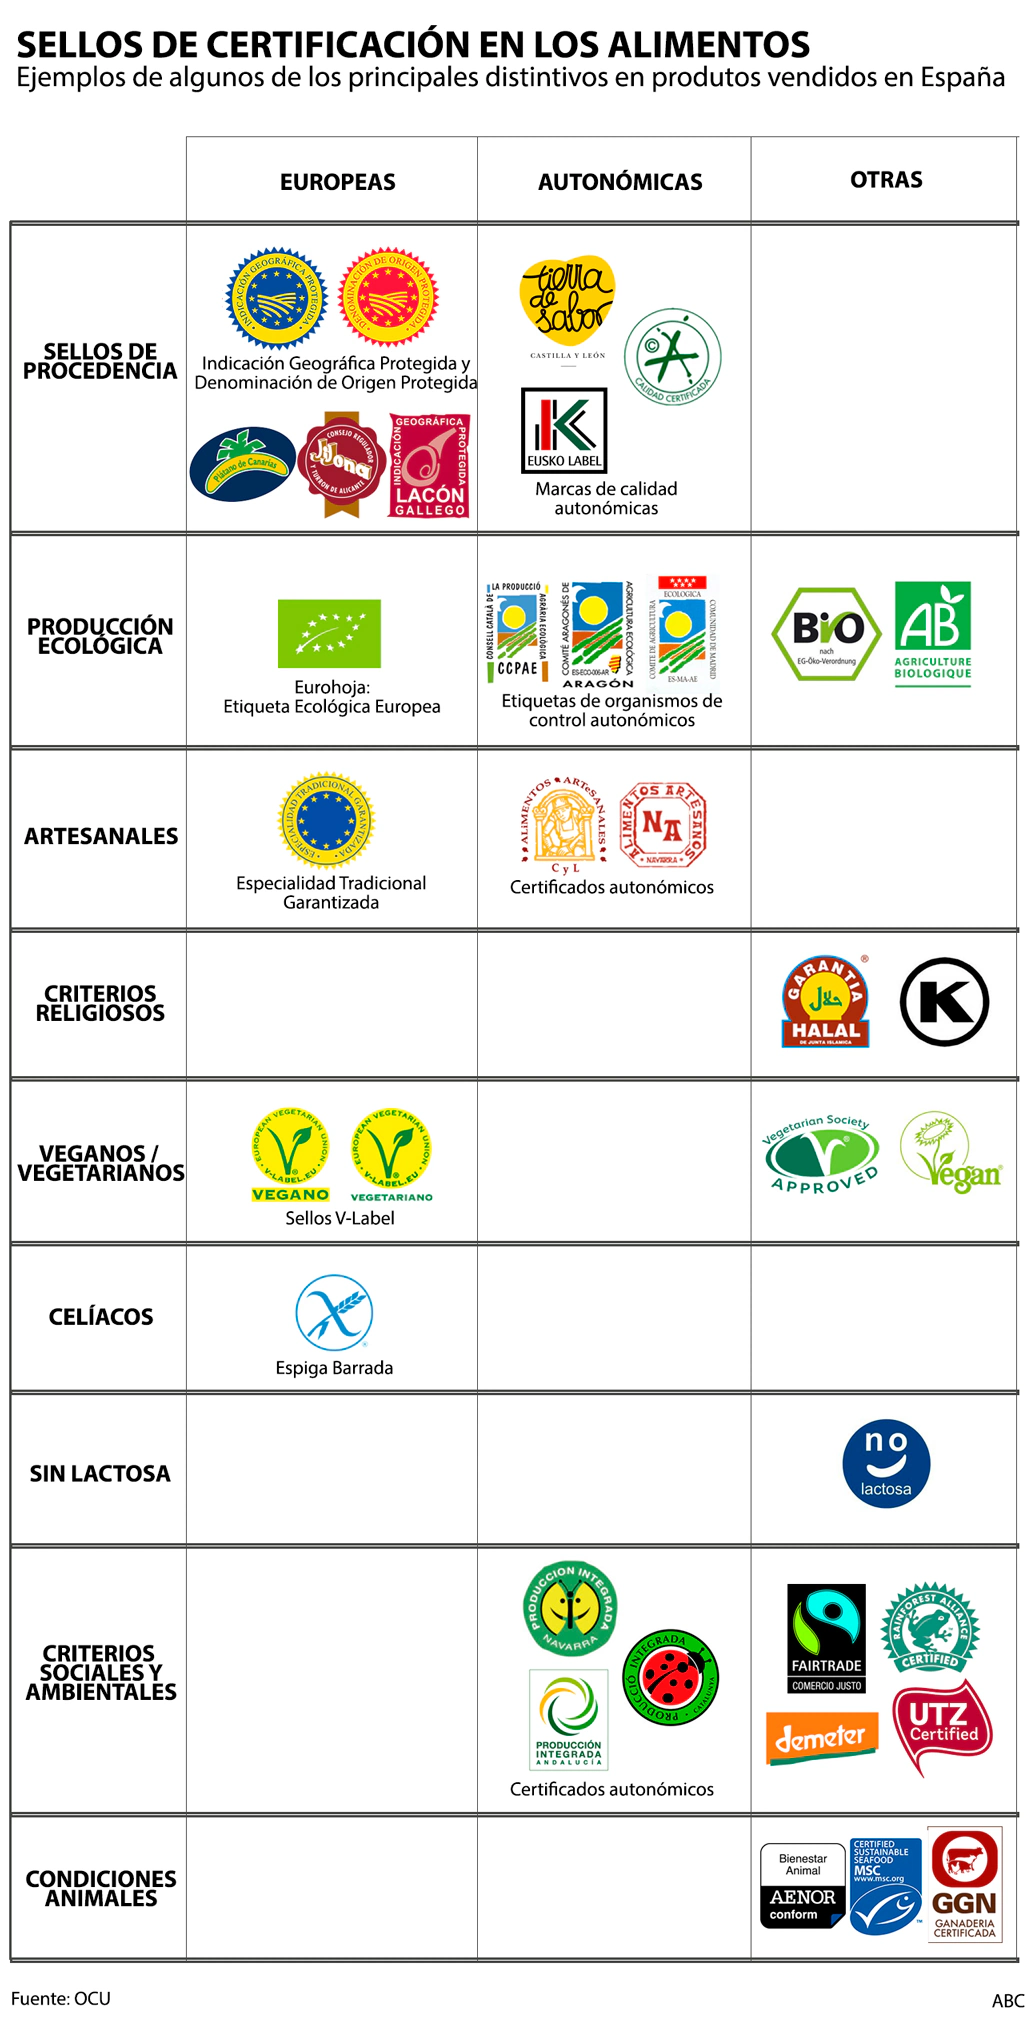 Ejemplos de sellos de certificación de alimentos